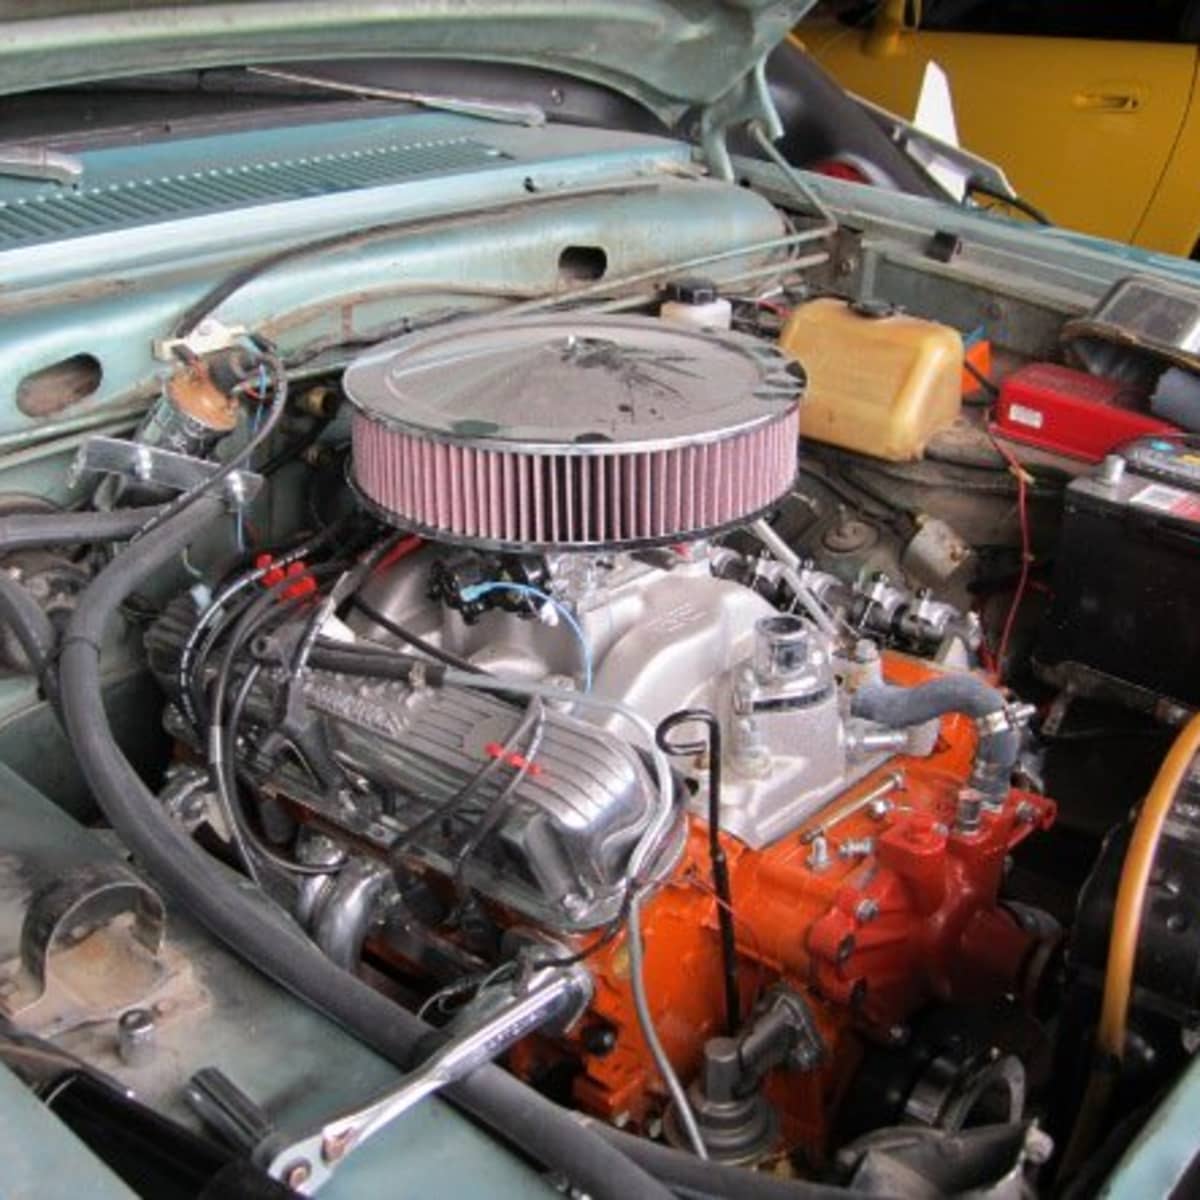 Radiator Cap 62-74 Mopar Dodge Plymouth 318 383 426 440 HP Motorad New 18lb